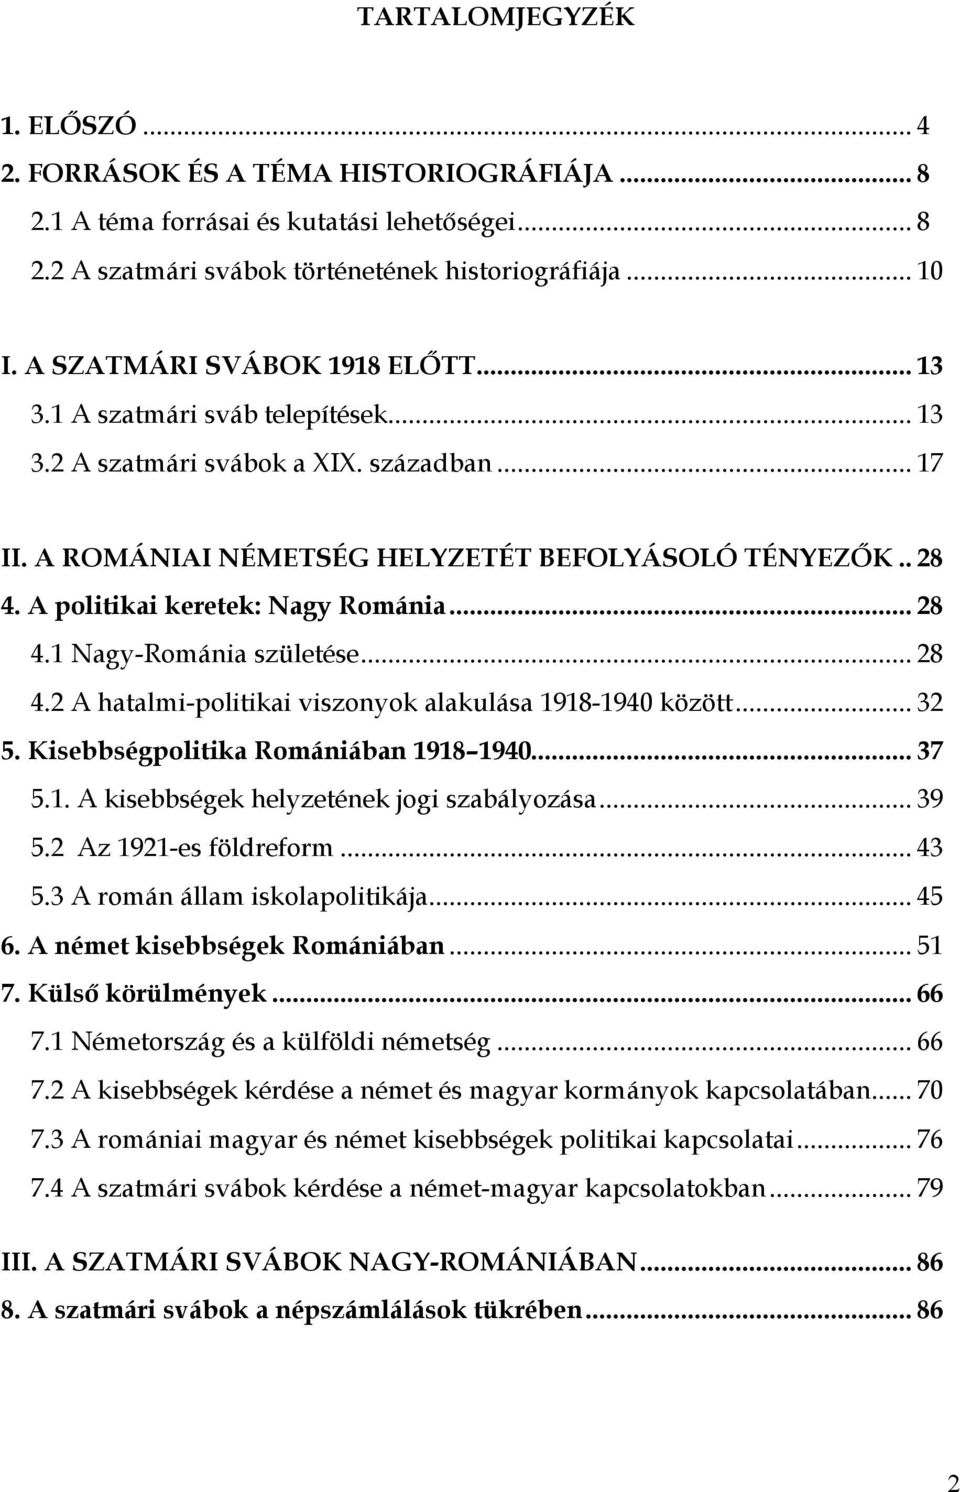 A politikai keretek: Nagy Románia... 28 4.1 Nagy-Románia születése... 28 4.2 A hatalmi-politikai viszonyok alakulása 1918-1940 között... 32 5. Kisebbségpolitika Romániában 1918 1940... 37 5.1. A kisebbségek helyzetének jogi szabályozása.